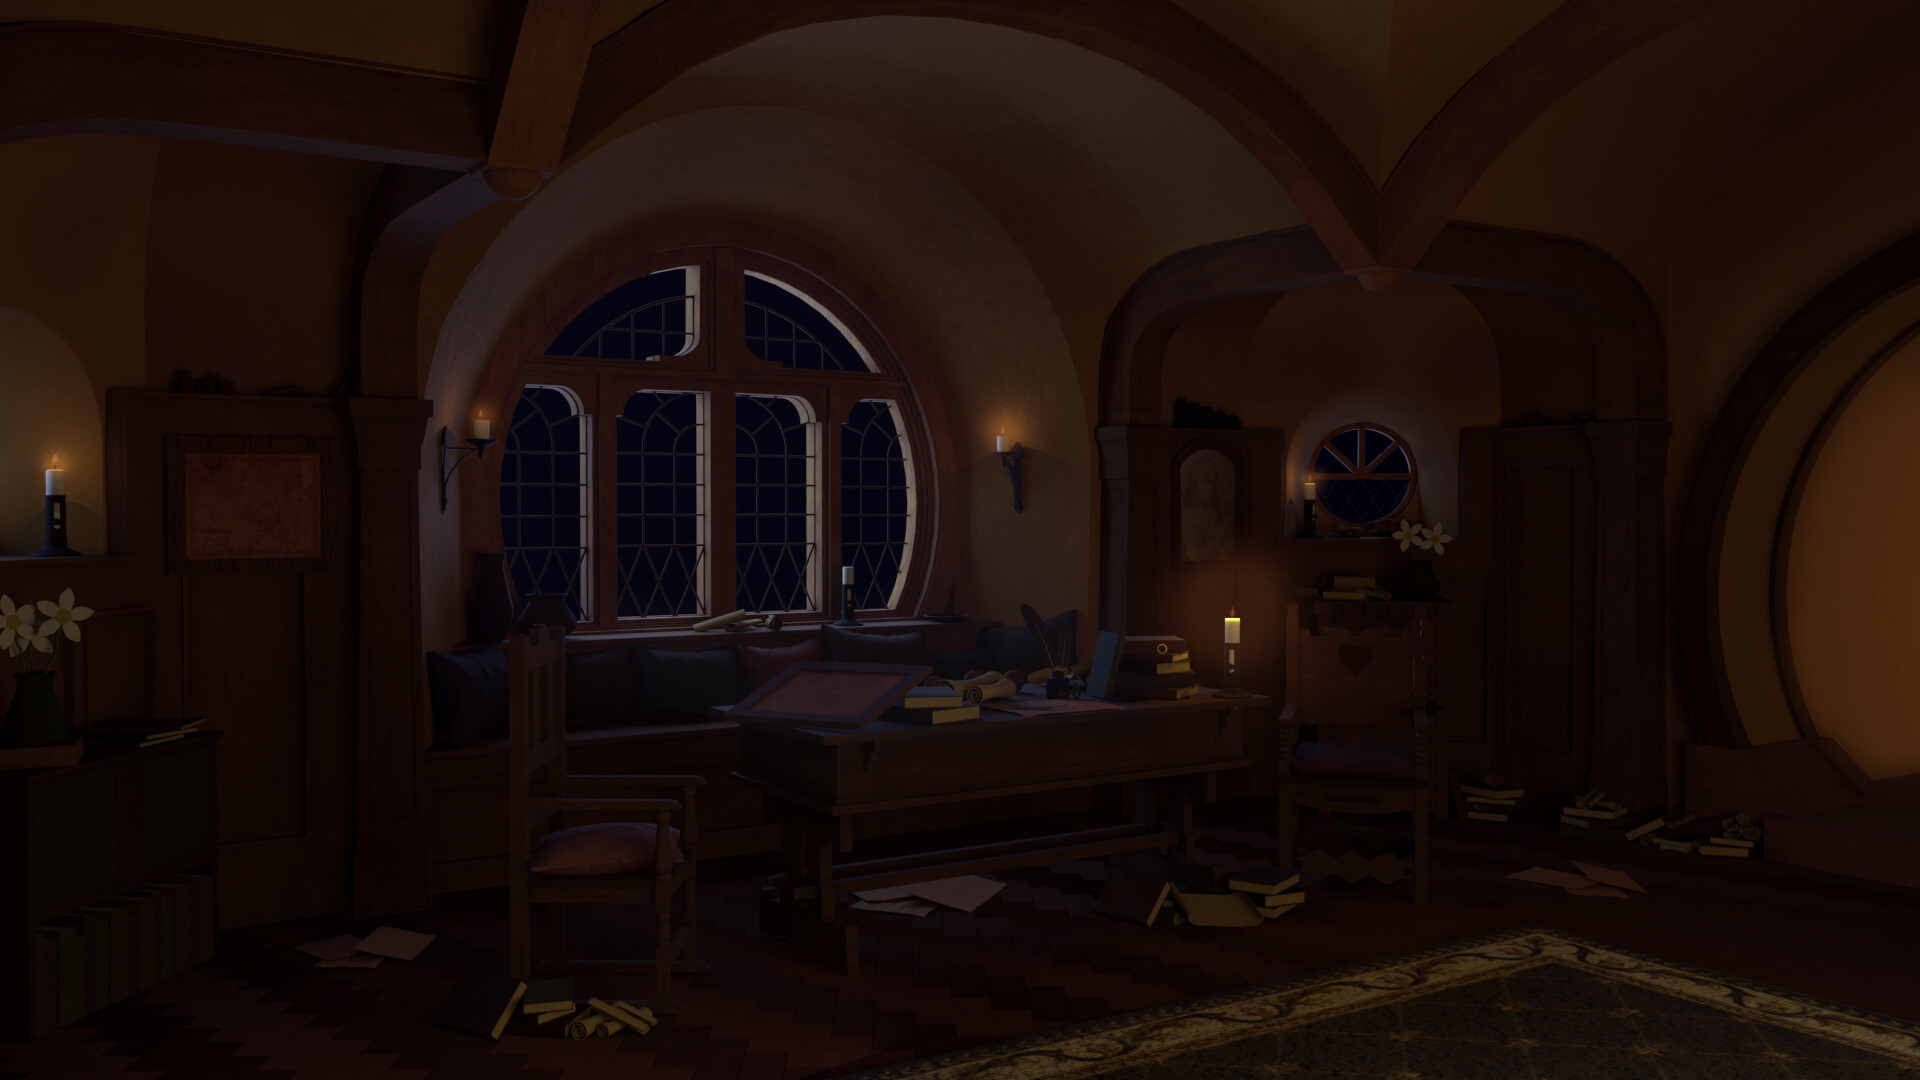 ArtStation - 3D Modeling - Inside the Hobbit House.